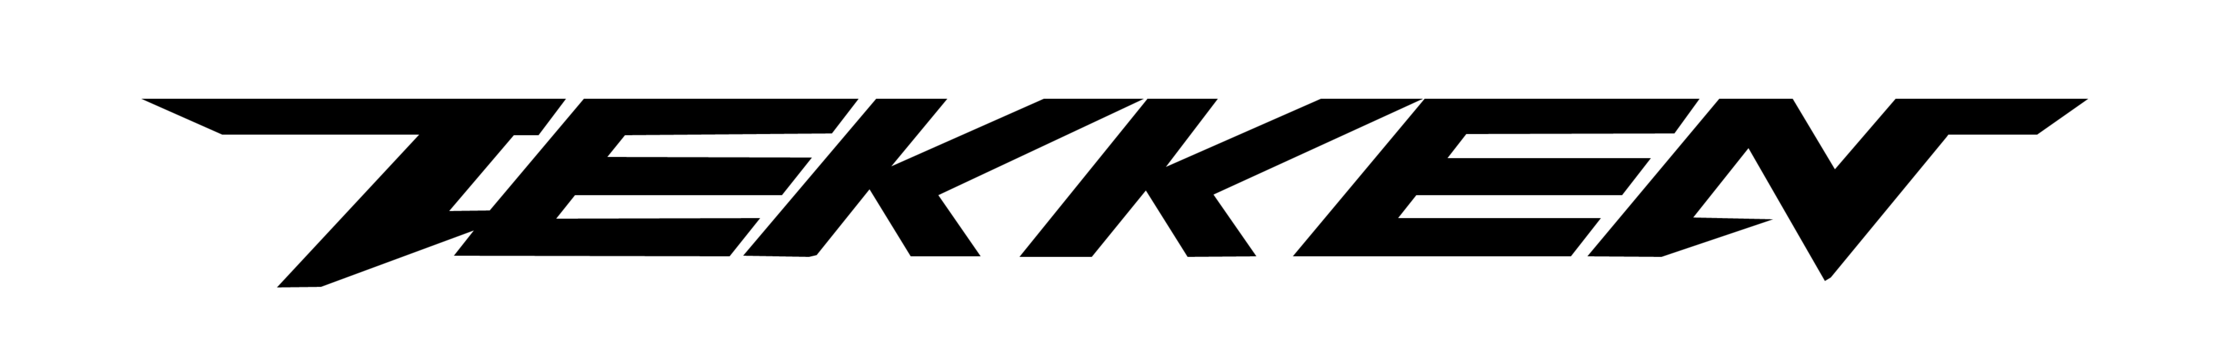 Tekken Logo Free Download PNG Image